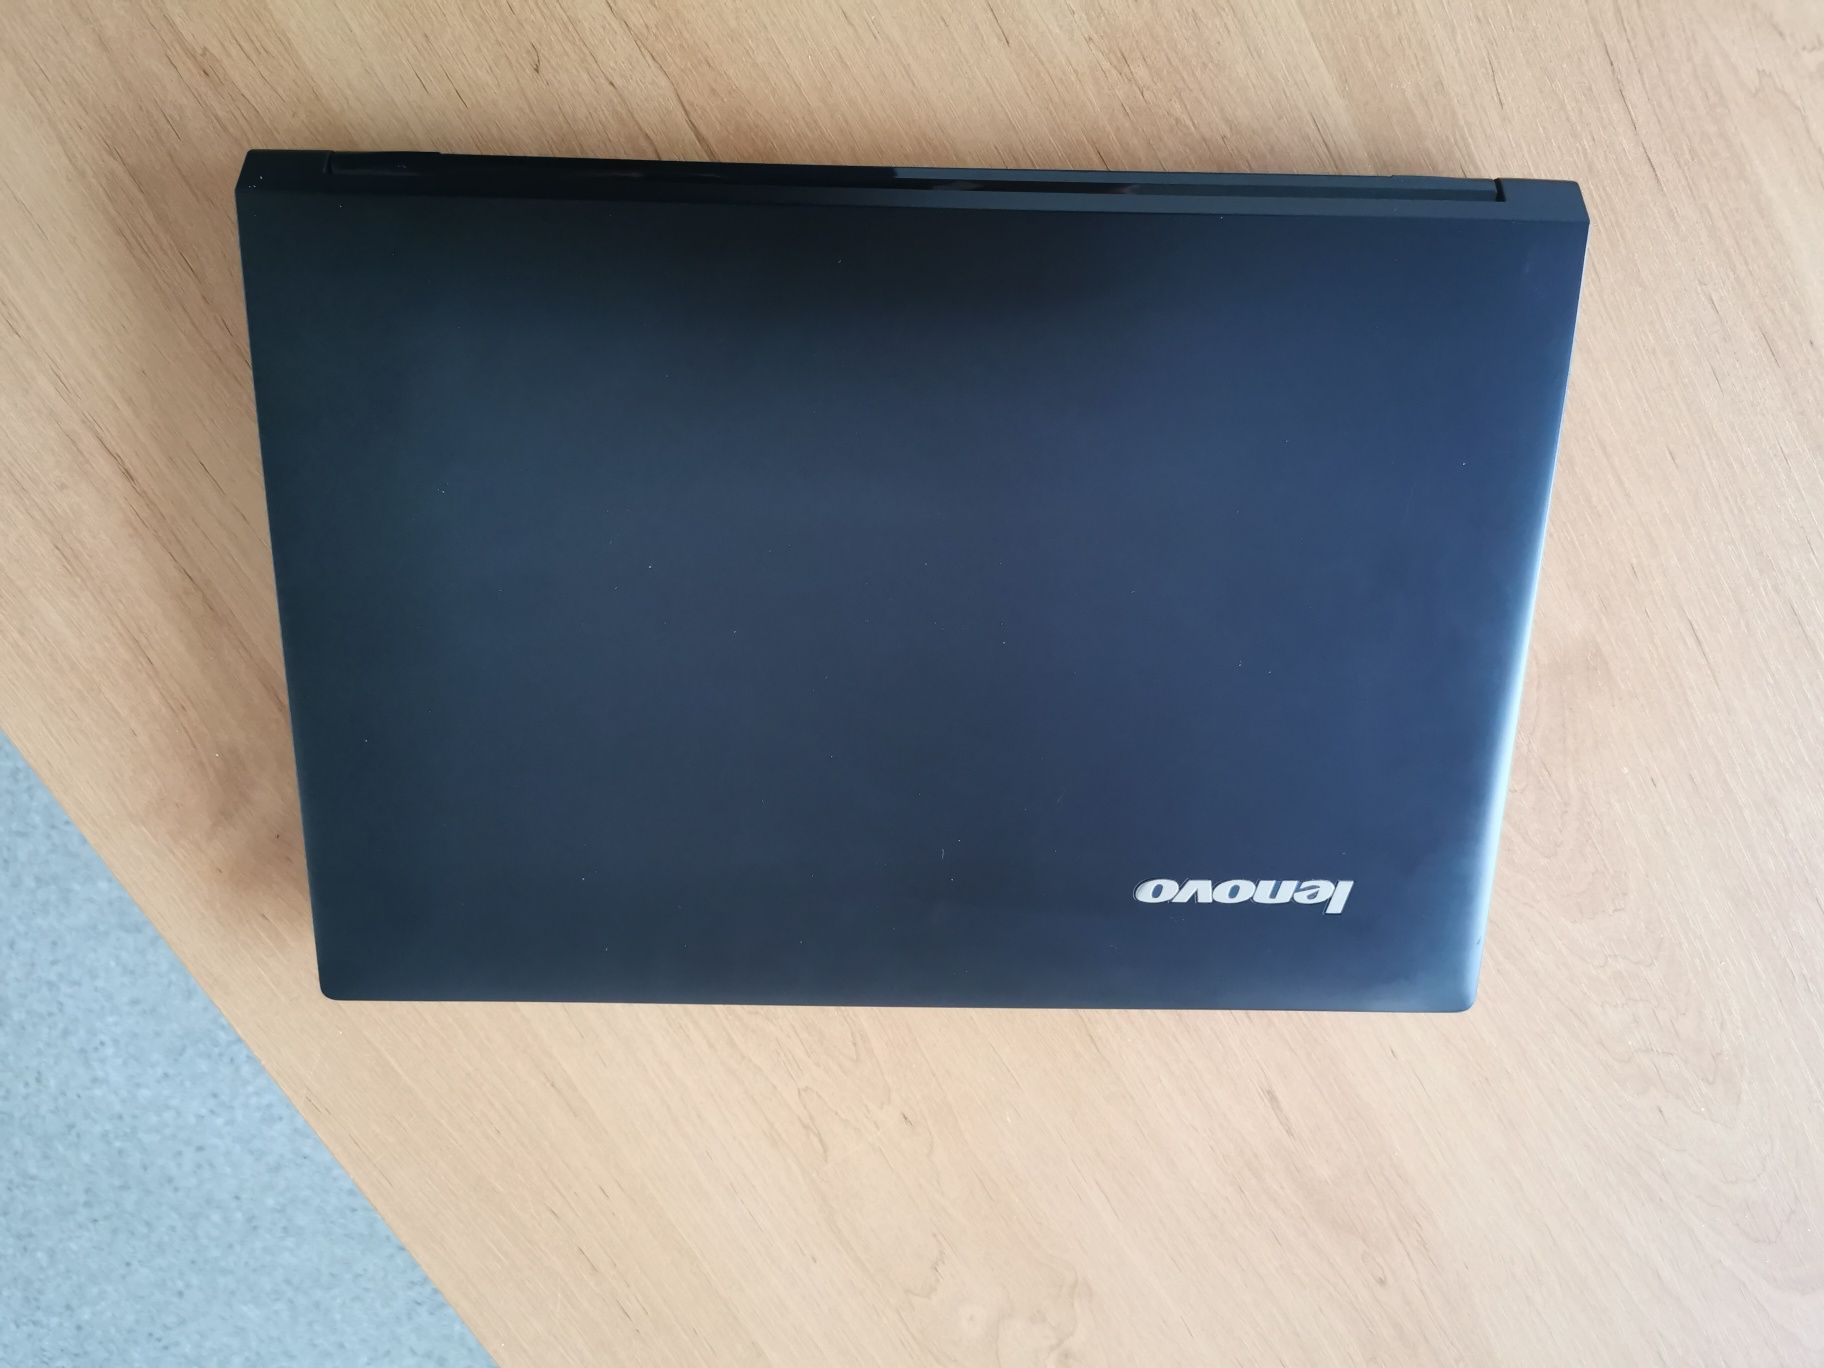 Laptop Lenovo G50-70, i7 4510u, 8 GB ram, ssd 120 Gb